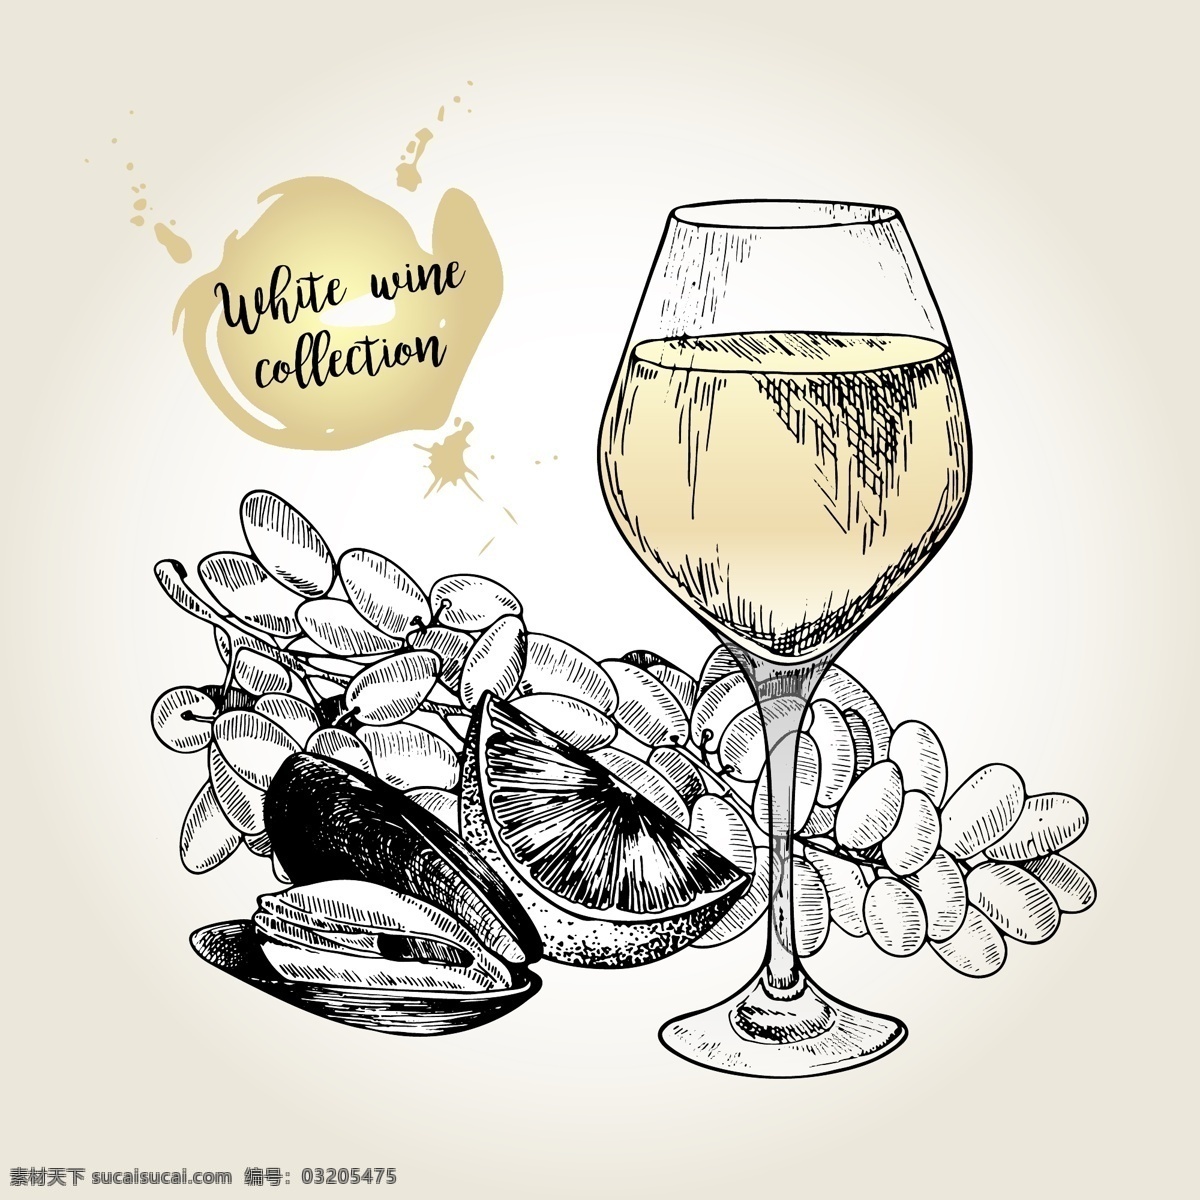 酒吧矢量素材 手绘 插画 酒杯 葡萄 水果 洋酒 酒吧海报 水果海报